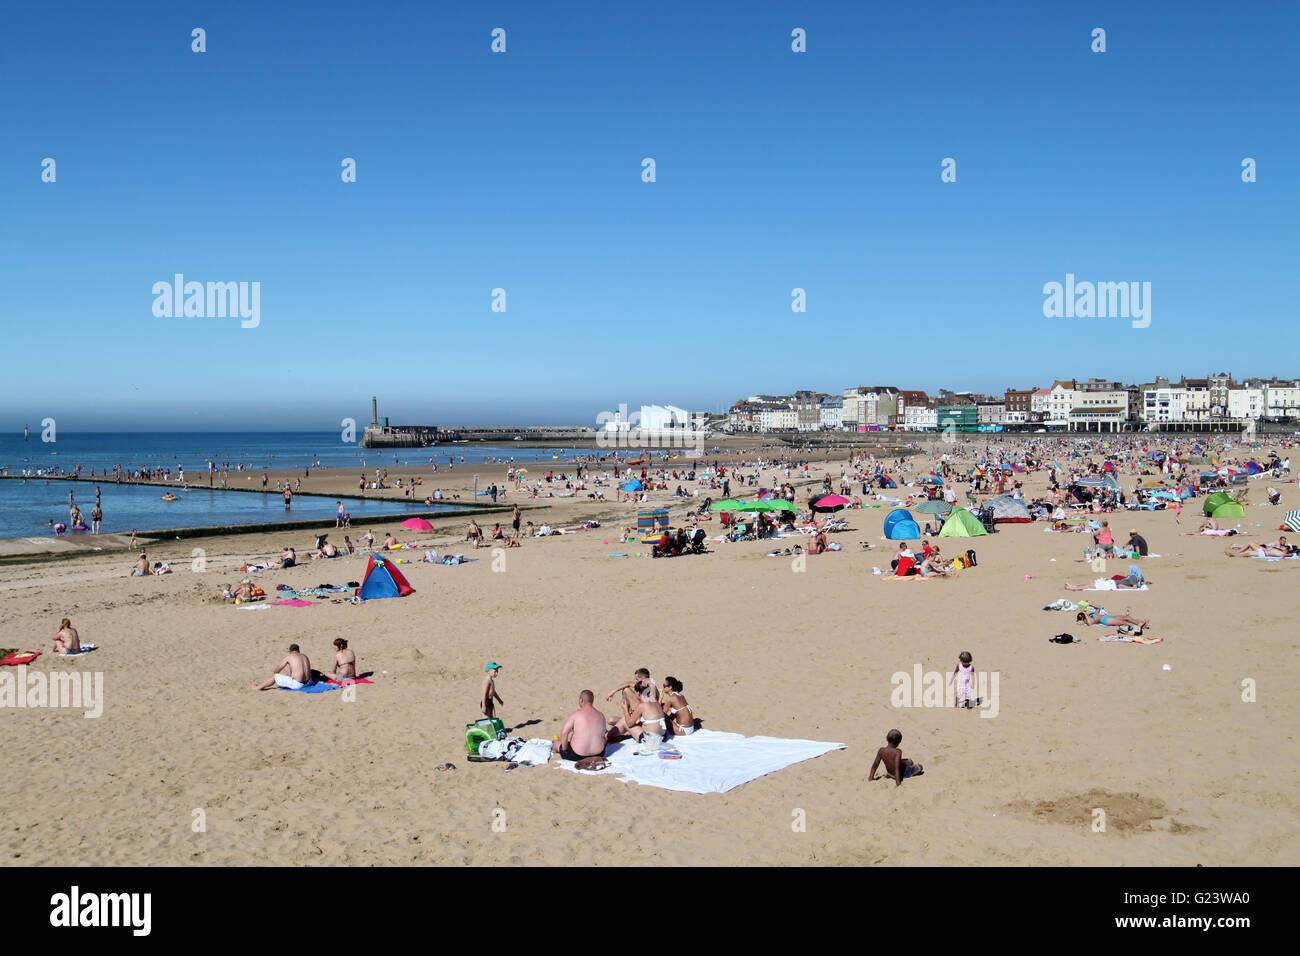 Les personnes bénéficiant du soleil sur une journée ensoleillée à la plage de Margate dans l'East Sussex, Angleterre Banque D'Images